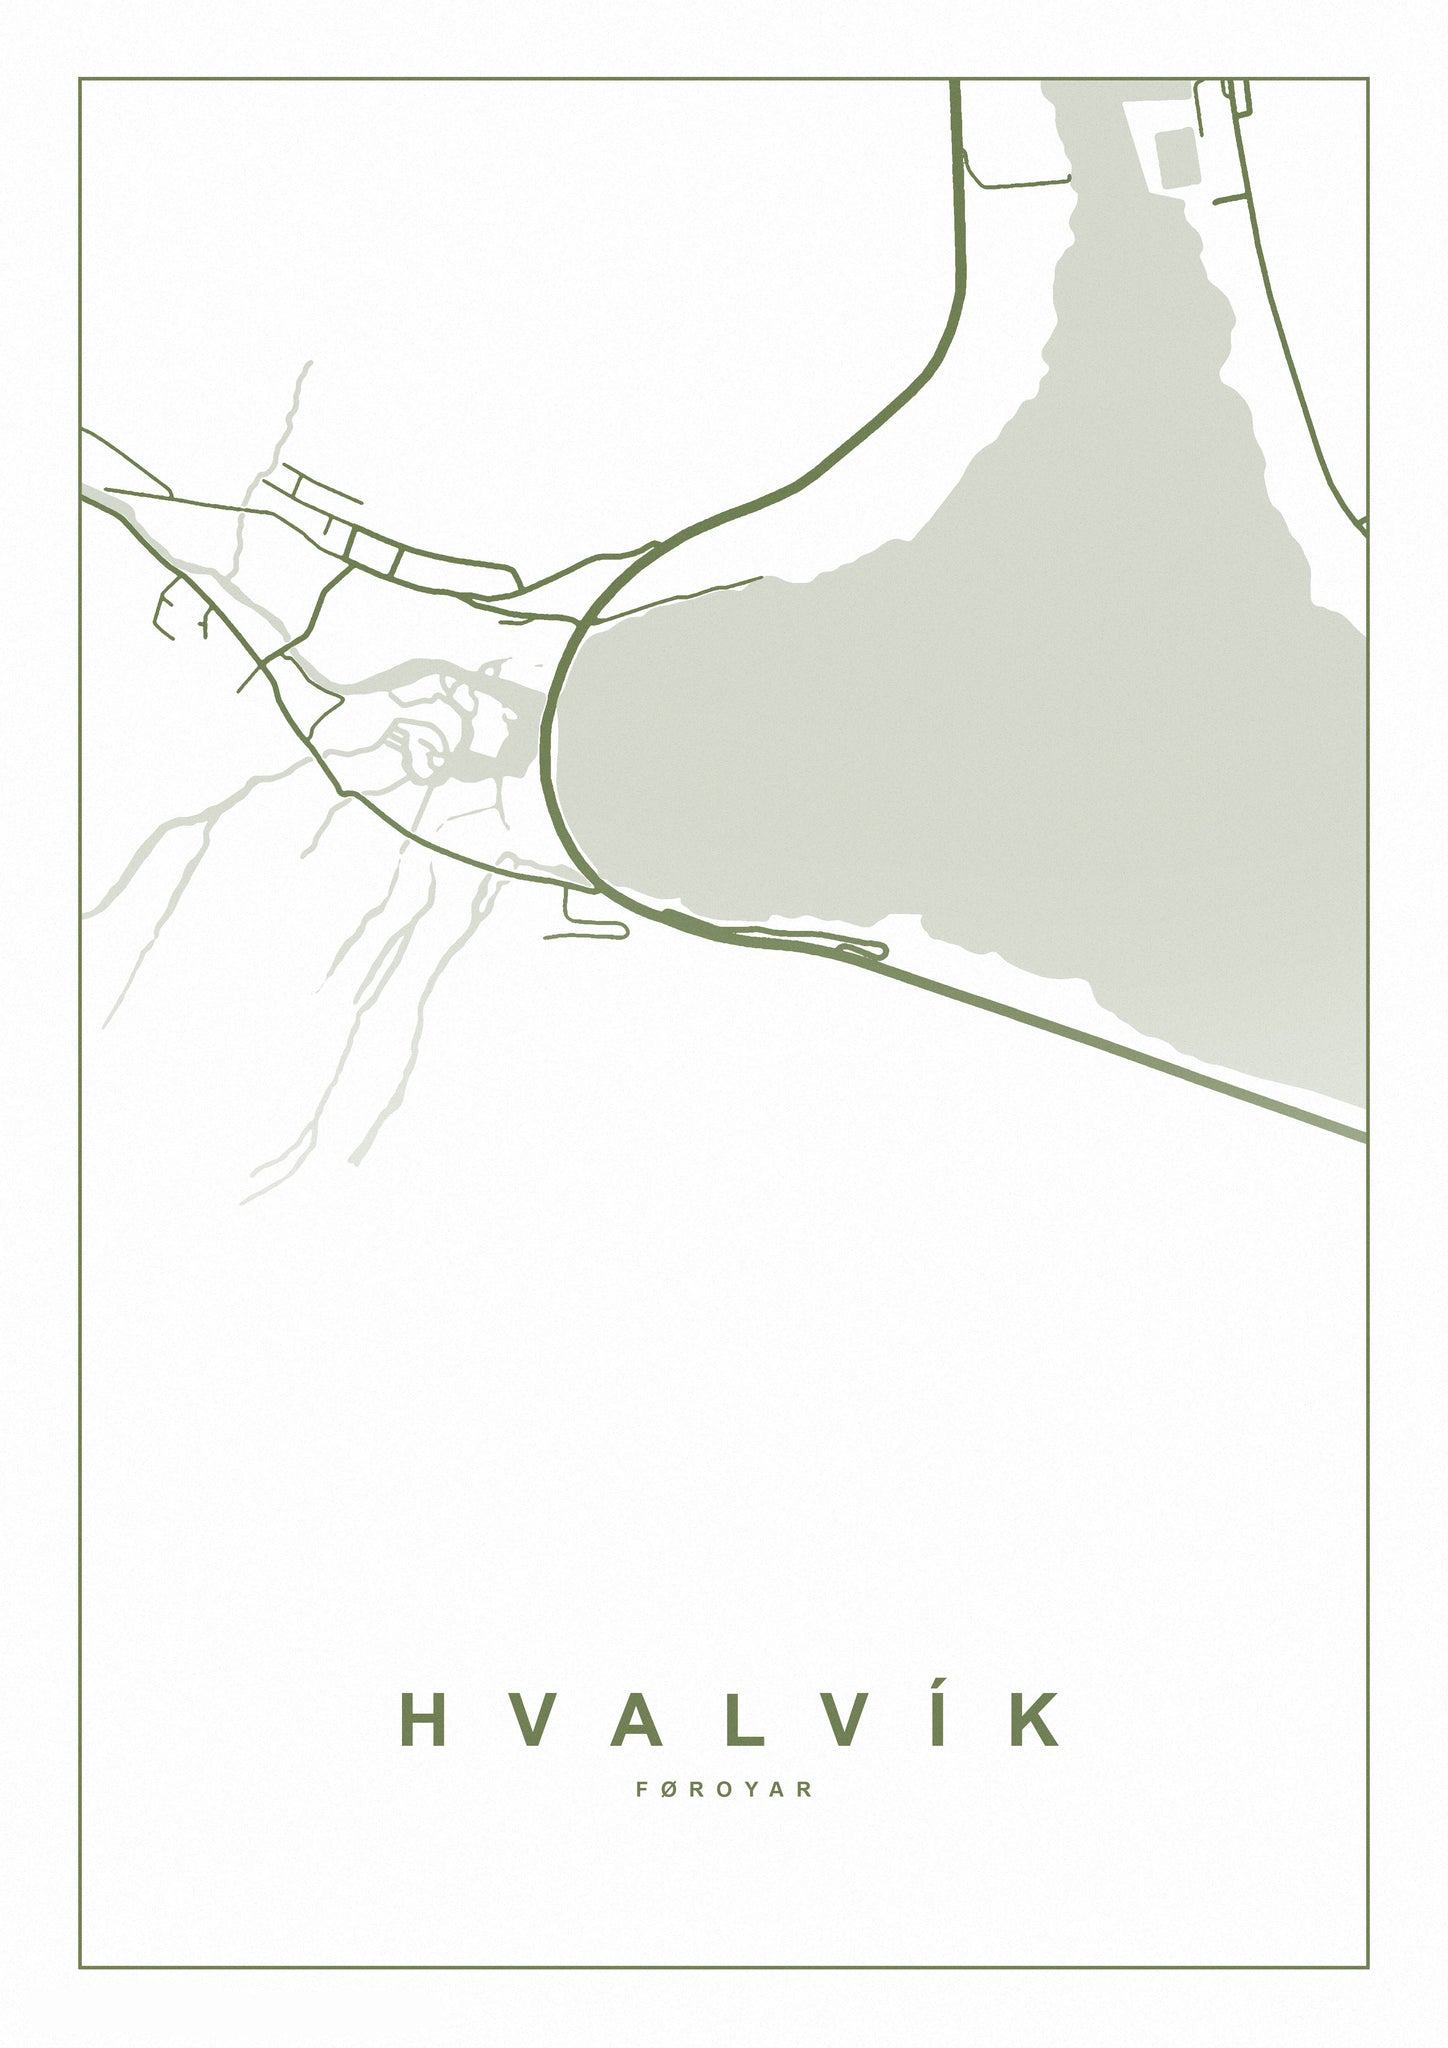 Hvalvík